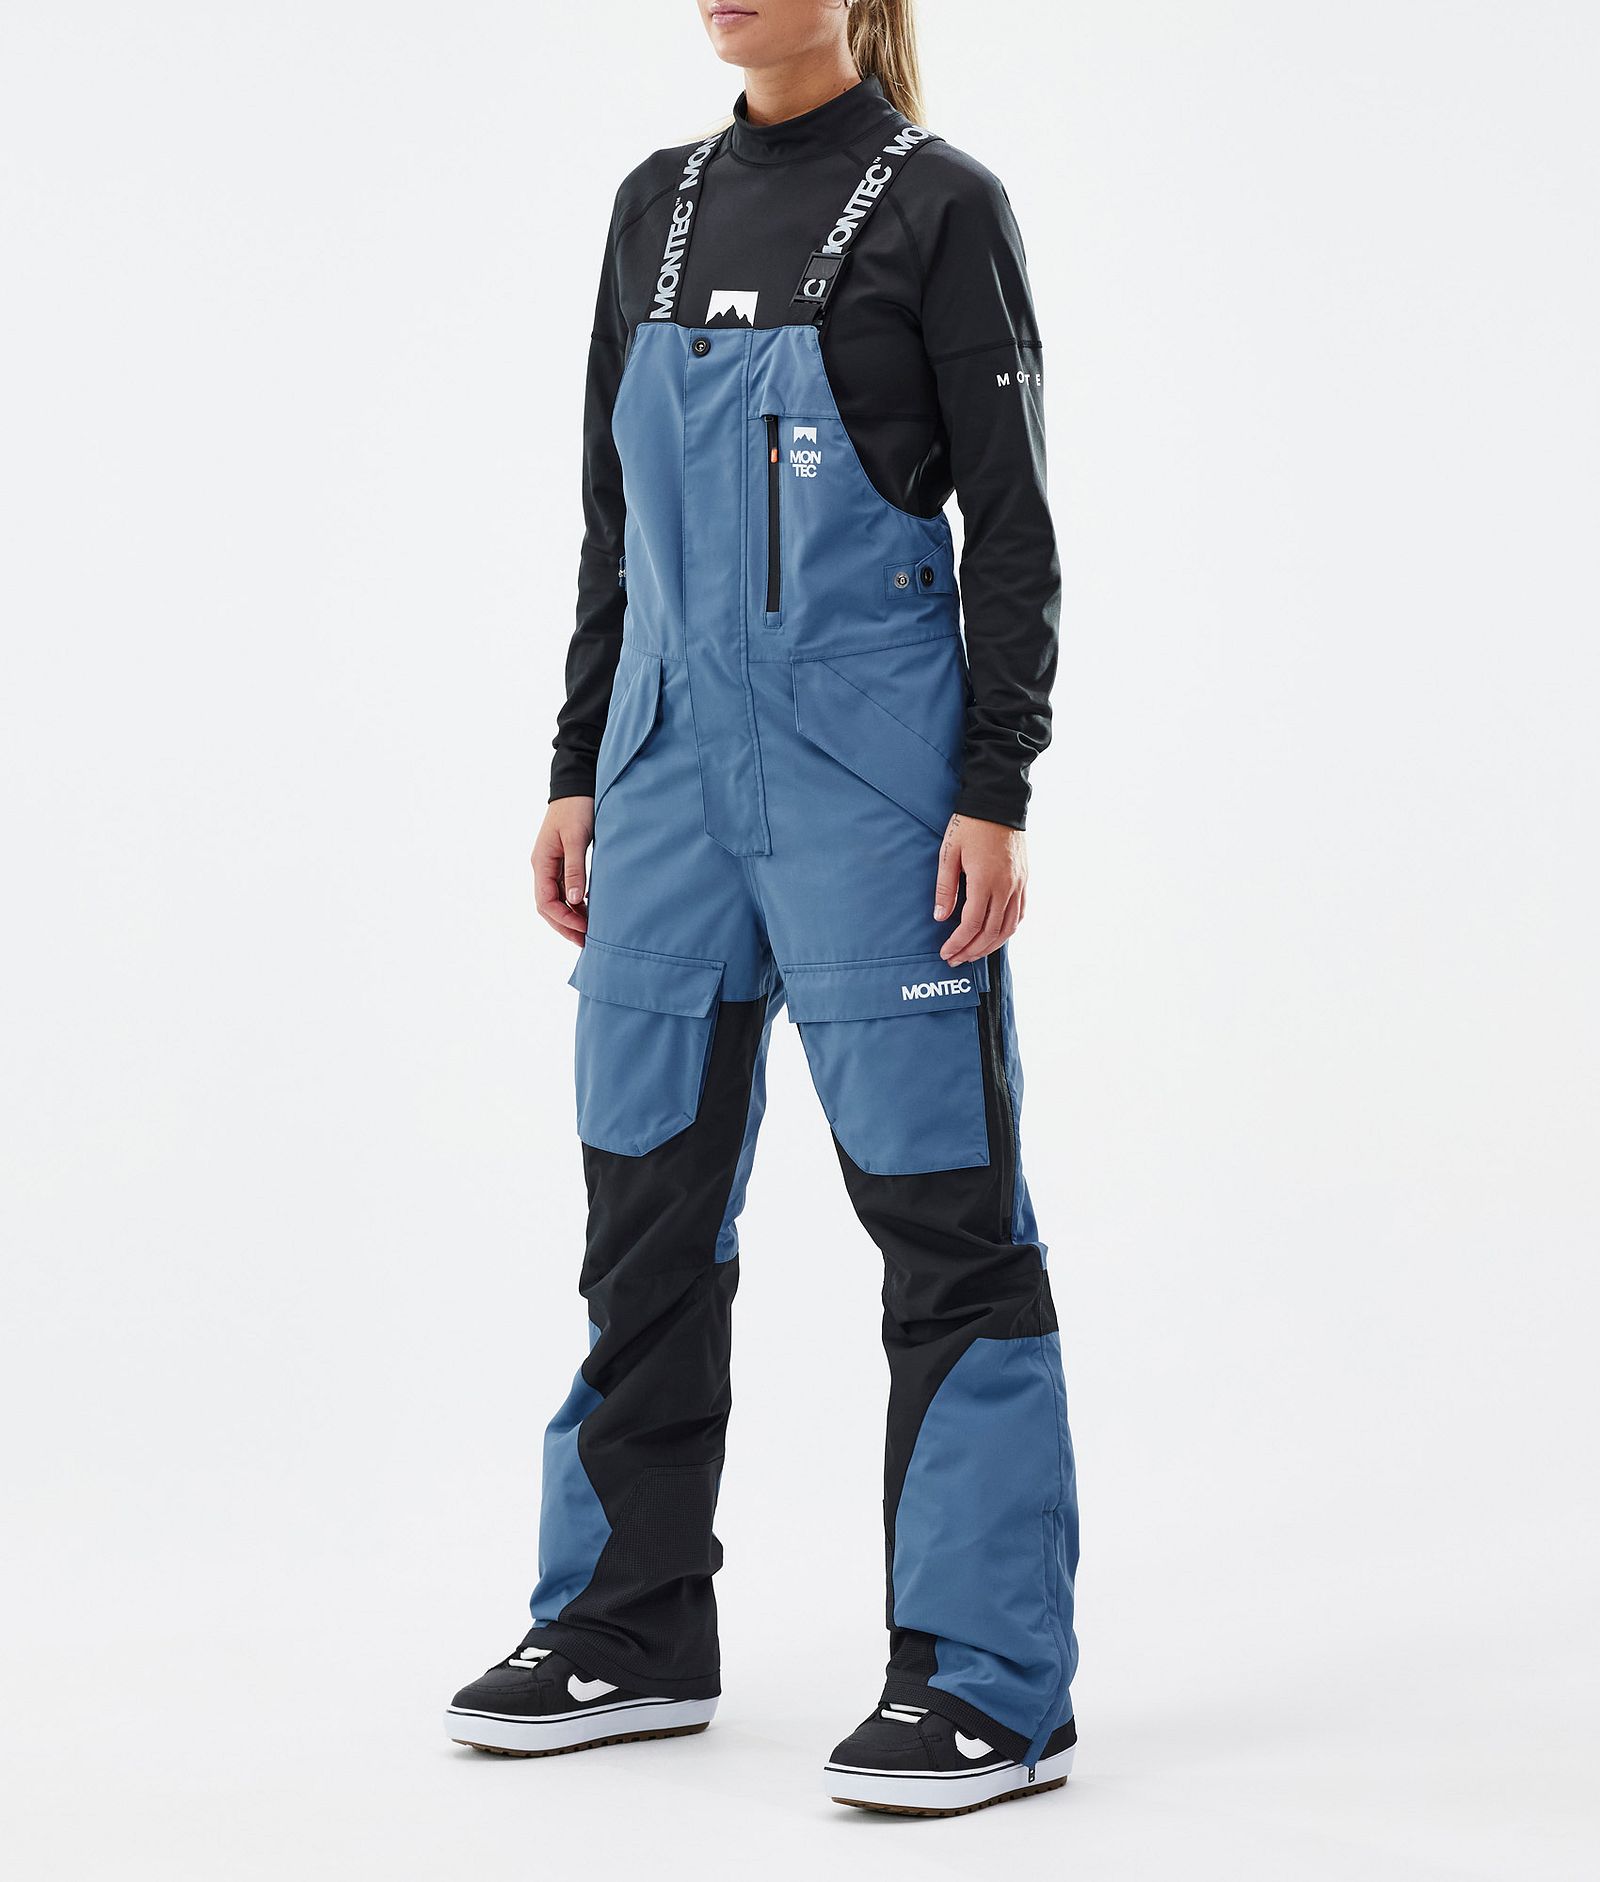 Fawk W Snowboard Pants Women Blue Steel/Black, Image 1 of 7